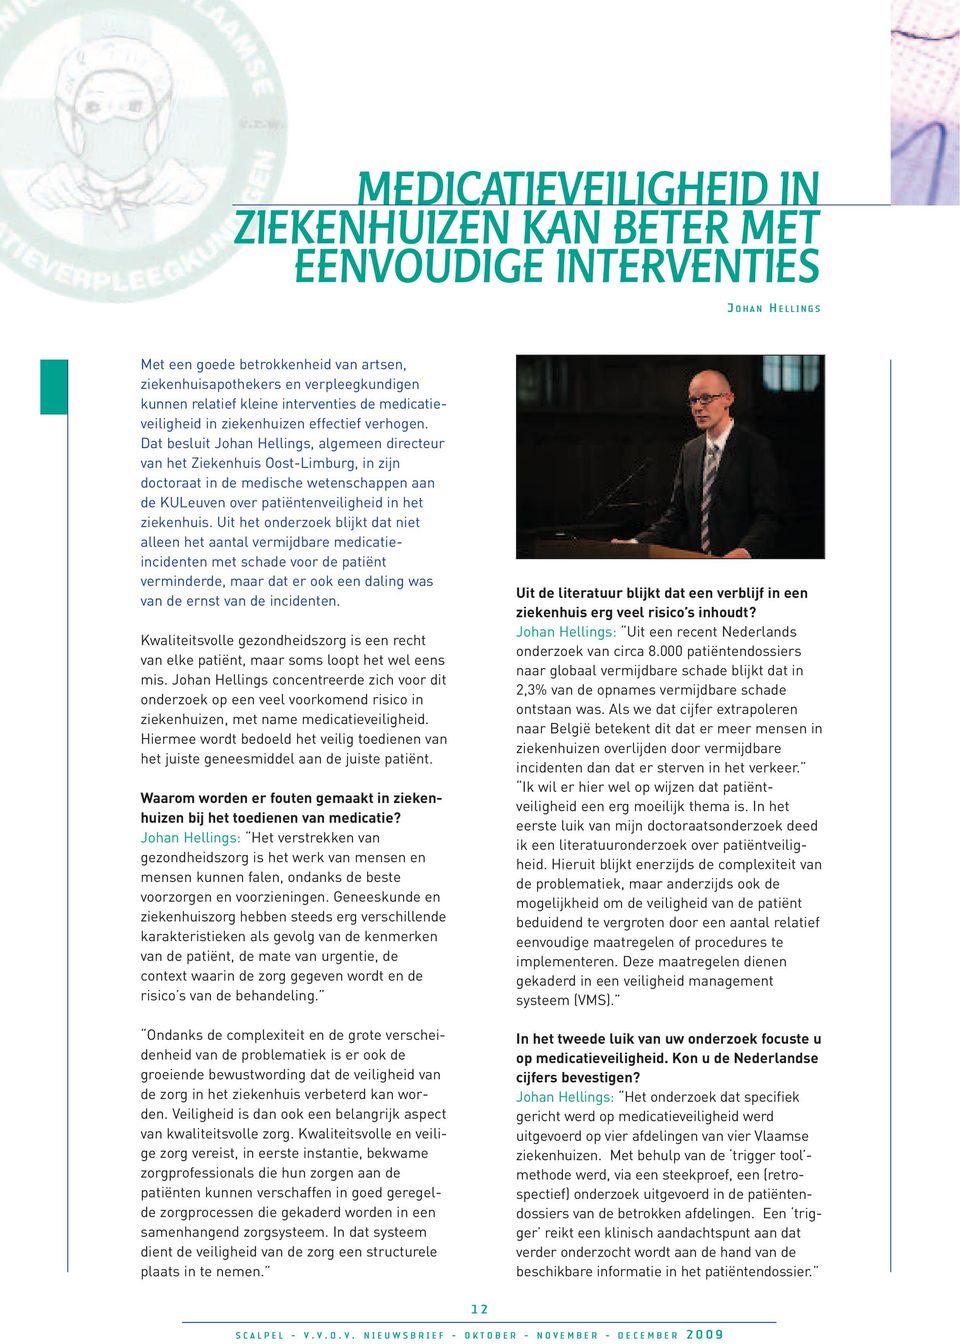 Dat besluit Johan Hellings, algemeen directeur van het Ziekenhuis Oost-Limburg, in zijn doctoraat in de medische wetenschappen aan de KULeuven over patiëntenveiligheid in het ziekenhuis.